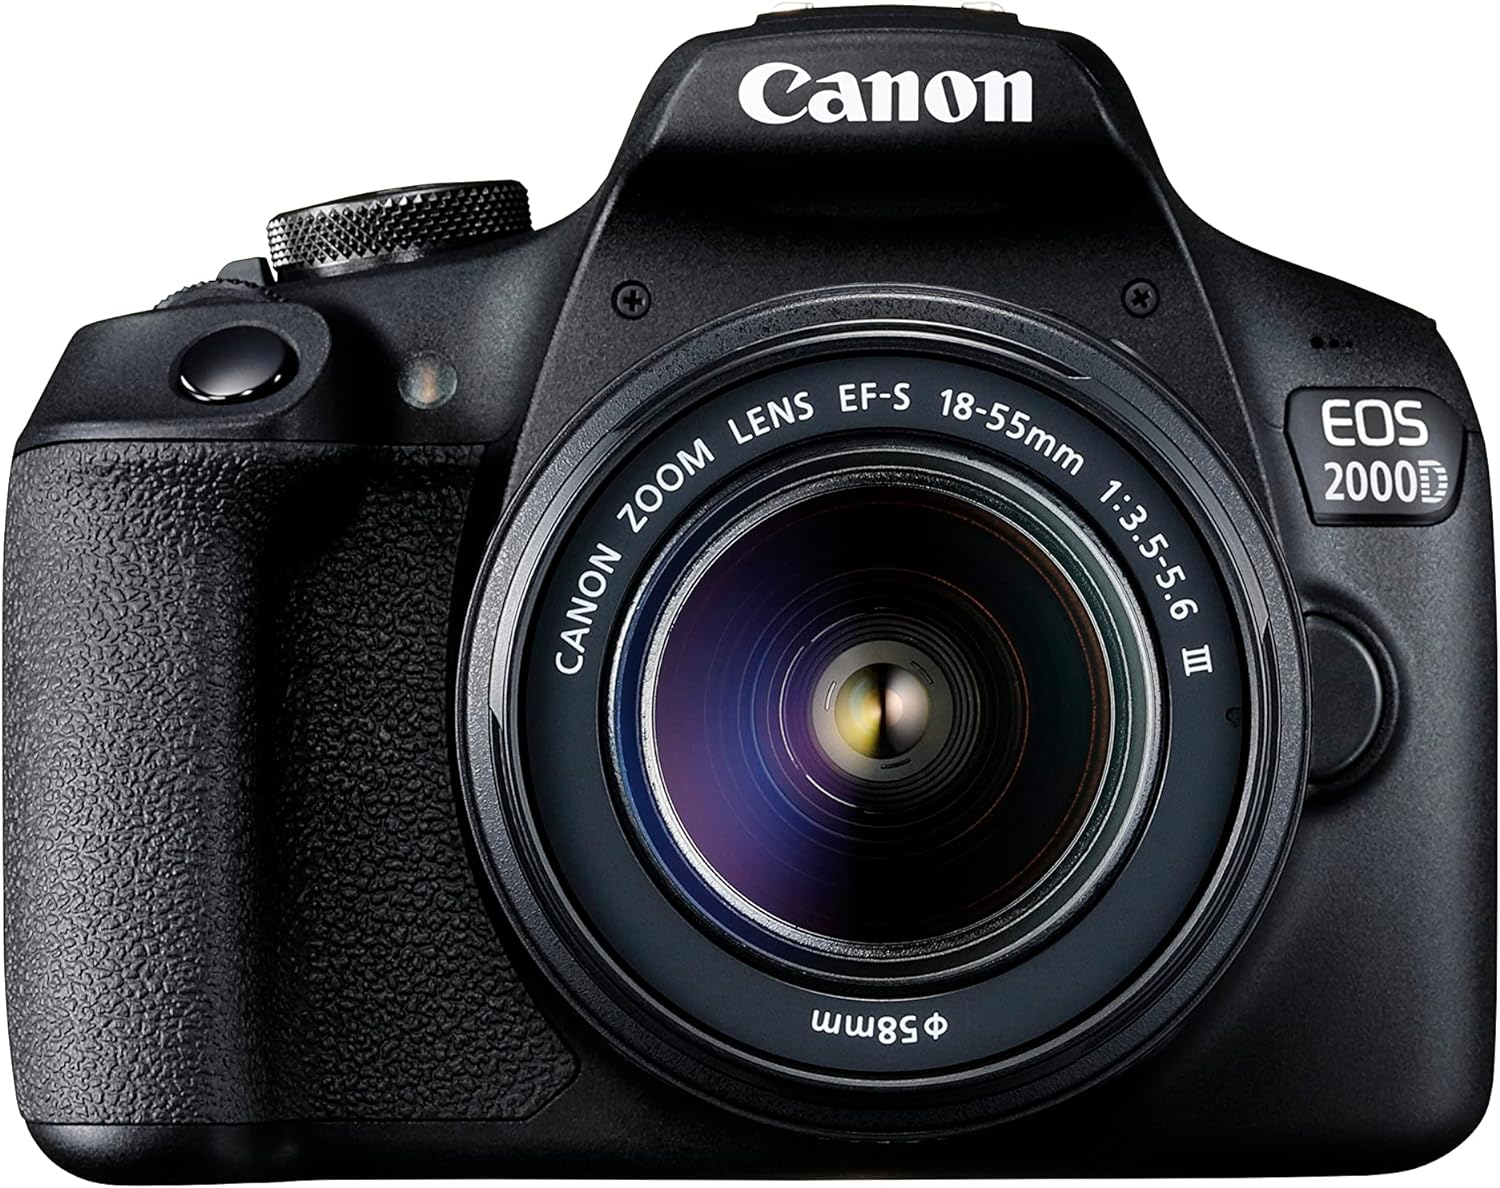 Canon EOS 2000D